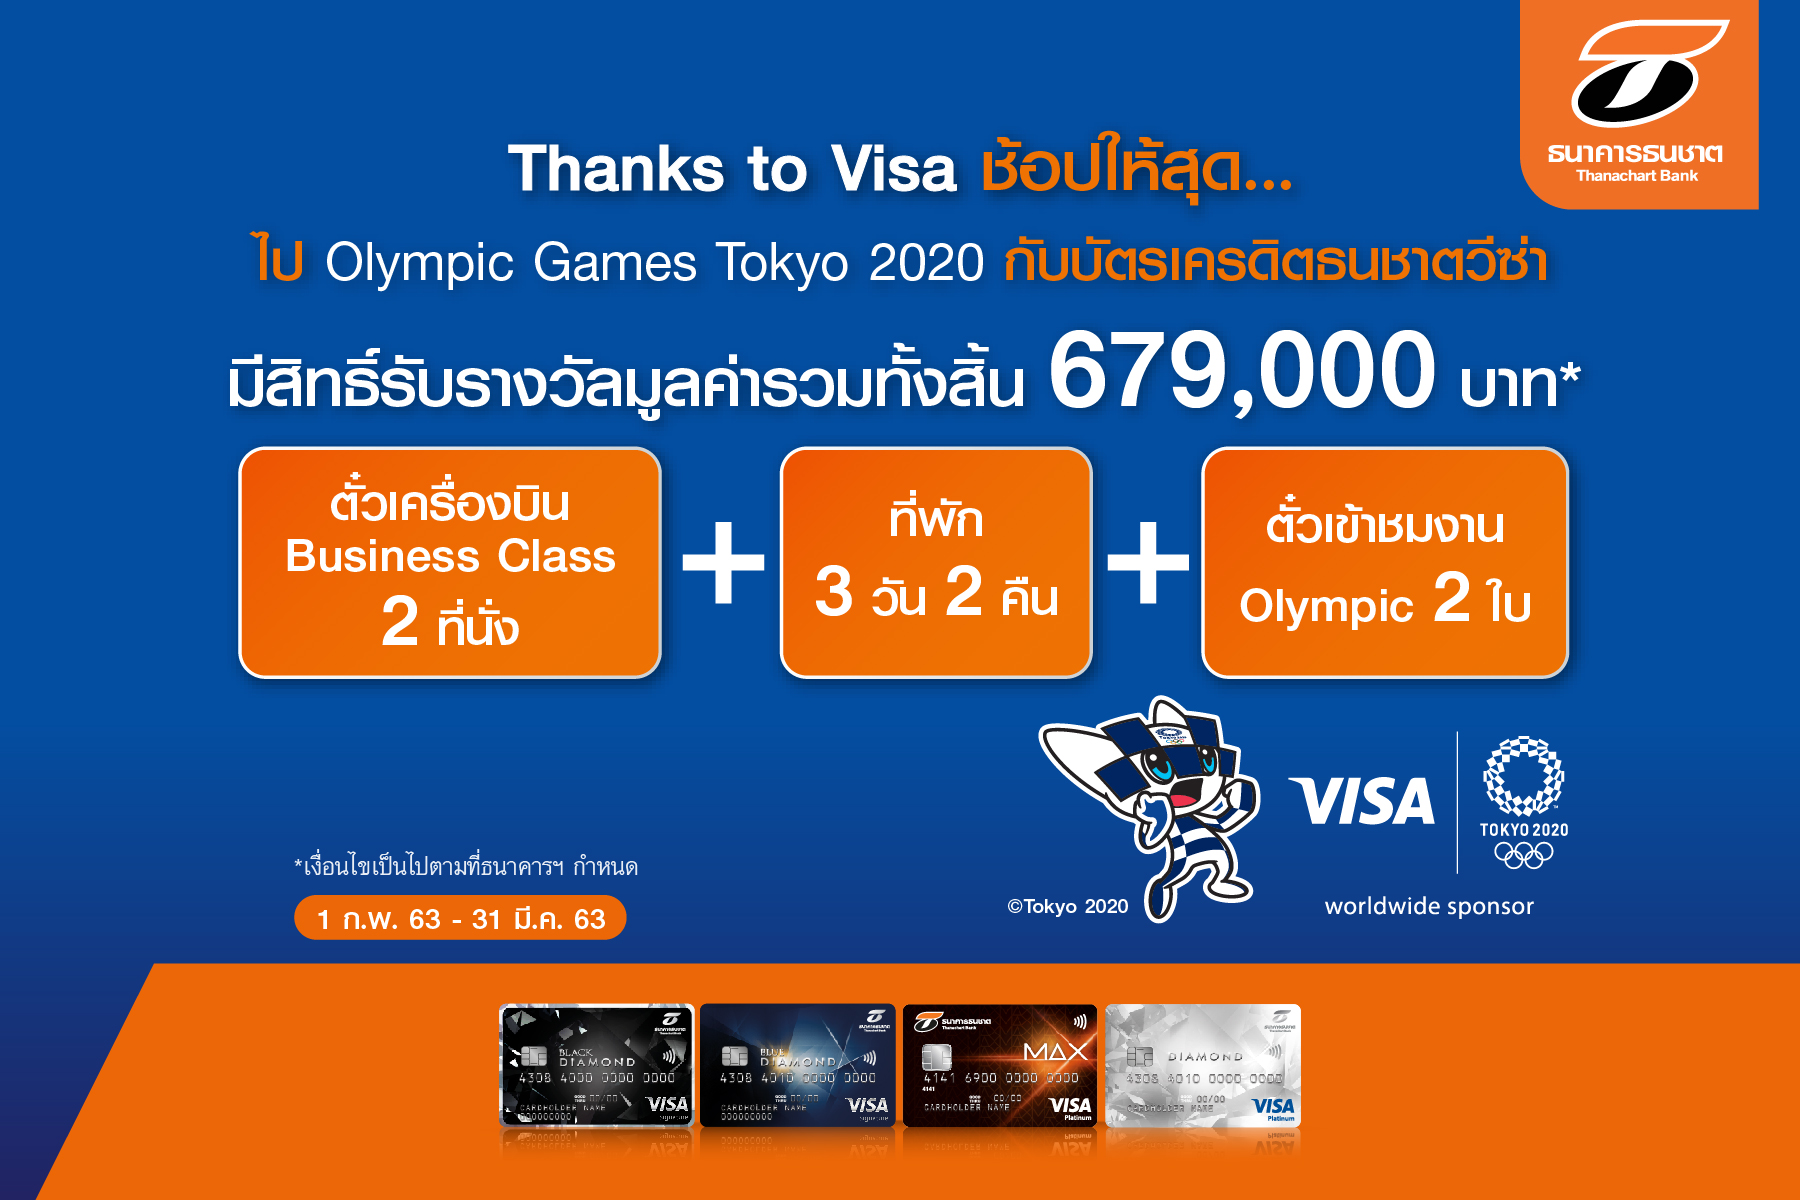 ธนชาต จัดแคมเปญให้ลูกค้าบัตรเครดิตวีซ่า ไปงาน Olympic Games Tokyo 2020 ที่ญี่ปุ่น